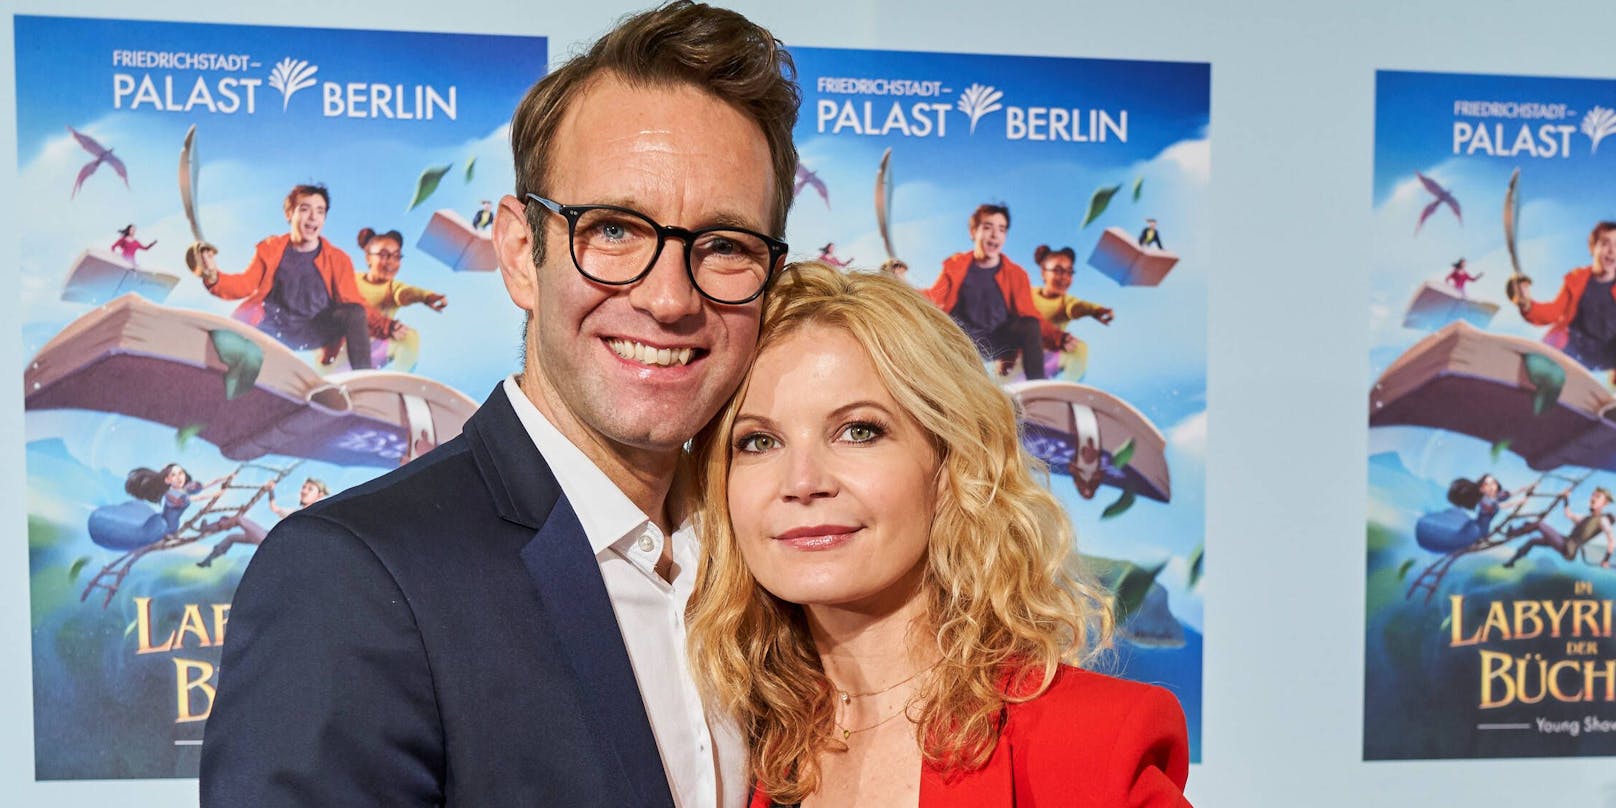 Peter Imhof mit Ehefrau Eva Imhof bei der Friedrichstadt-Palast Berlin Premiere 